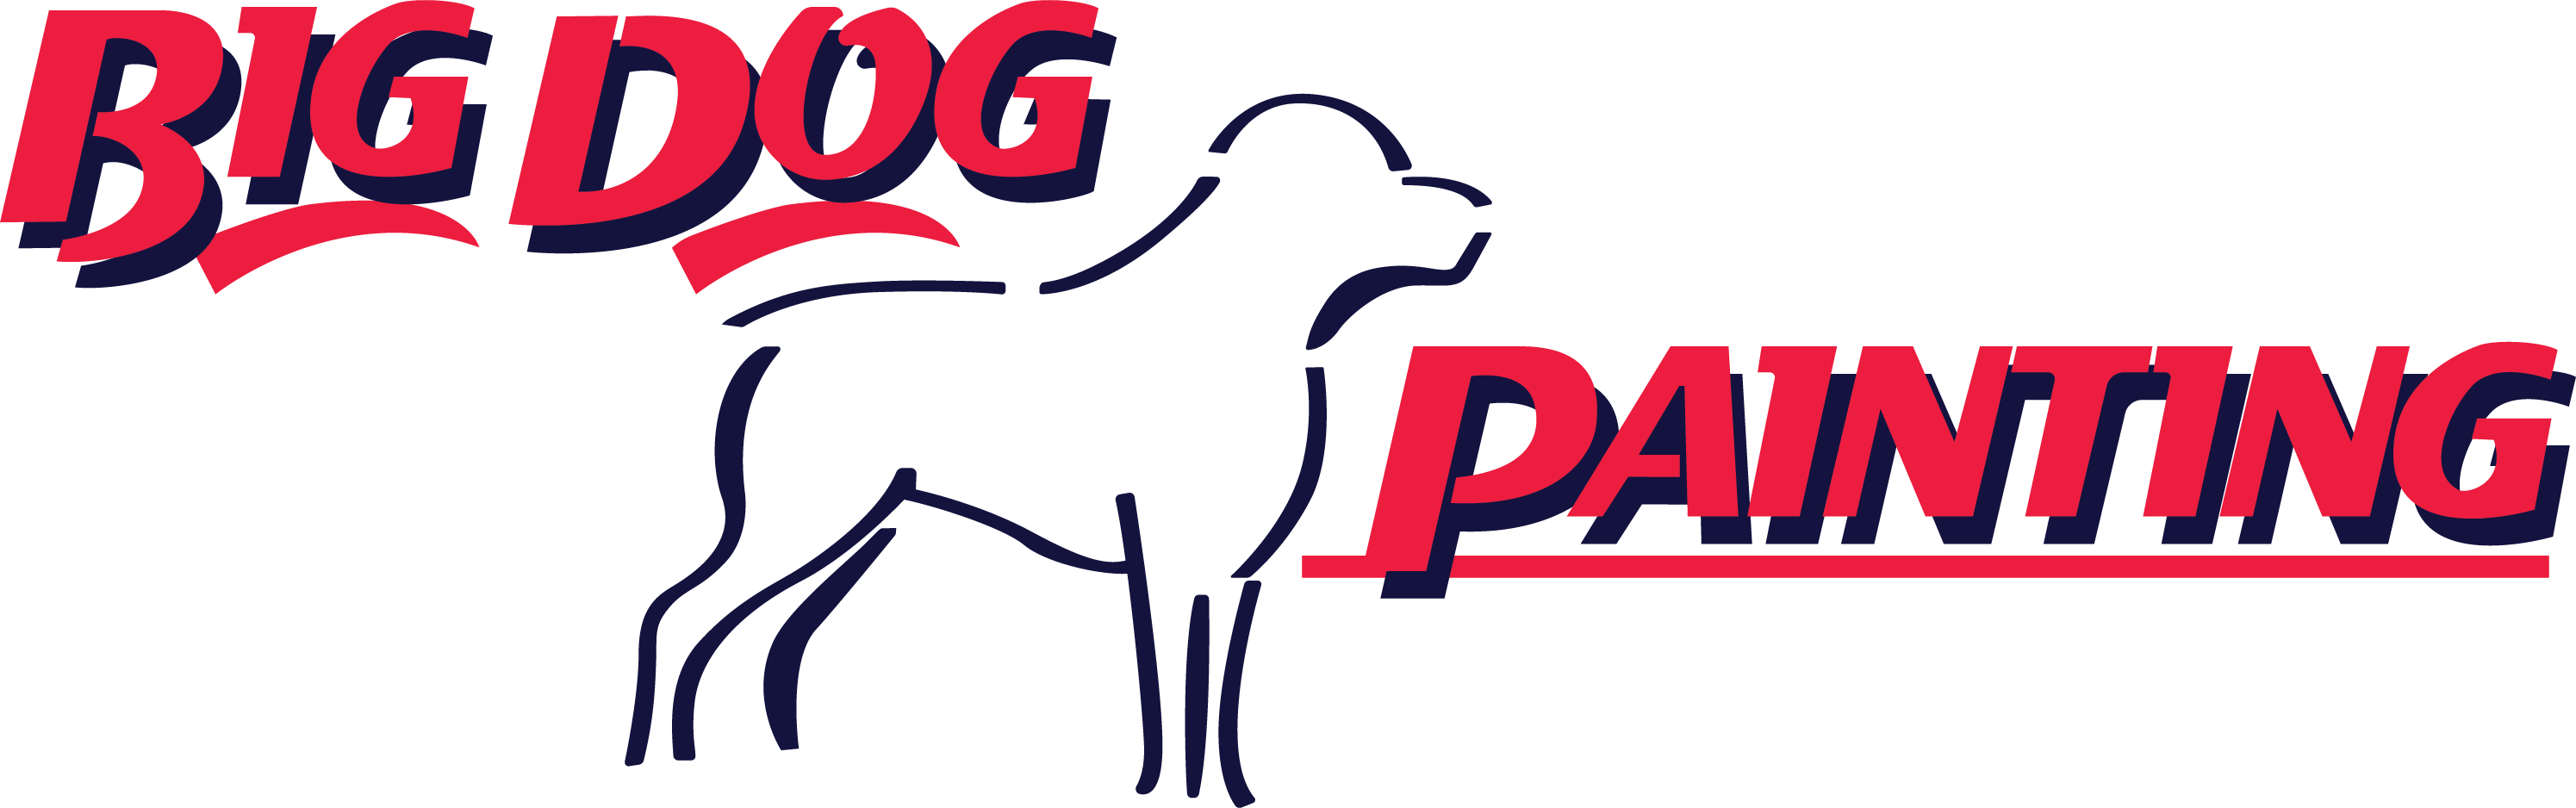 Big Dog Painting, LLC Logo